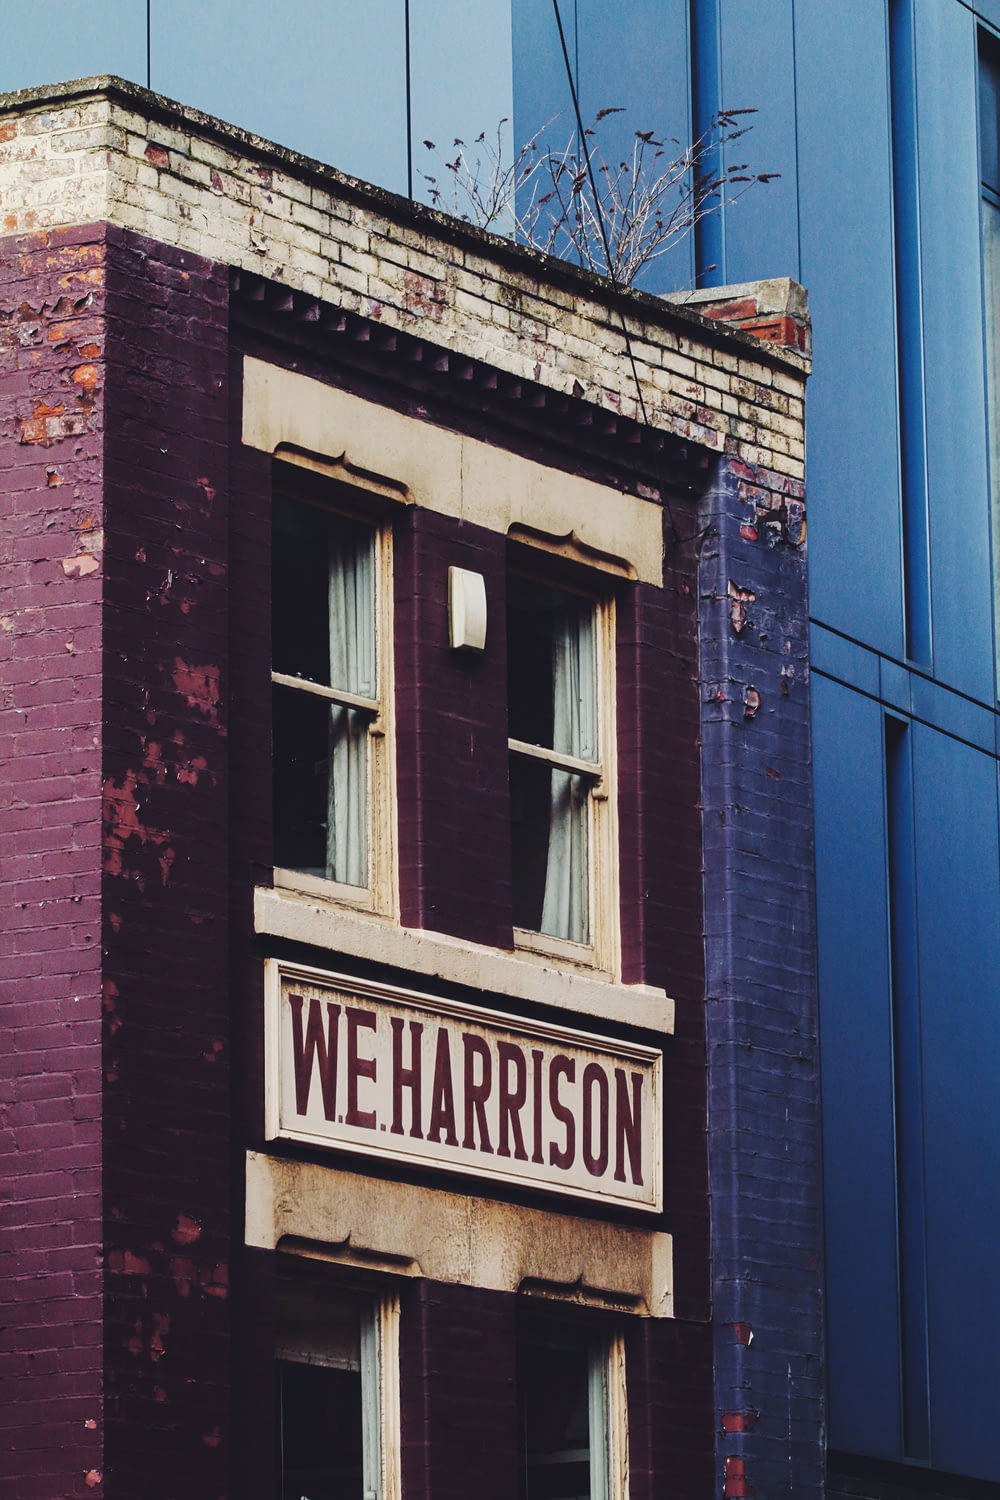 W.E. Harrison building